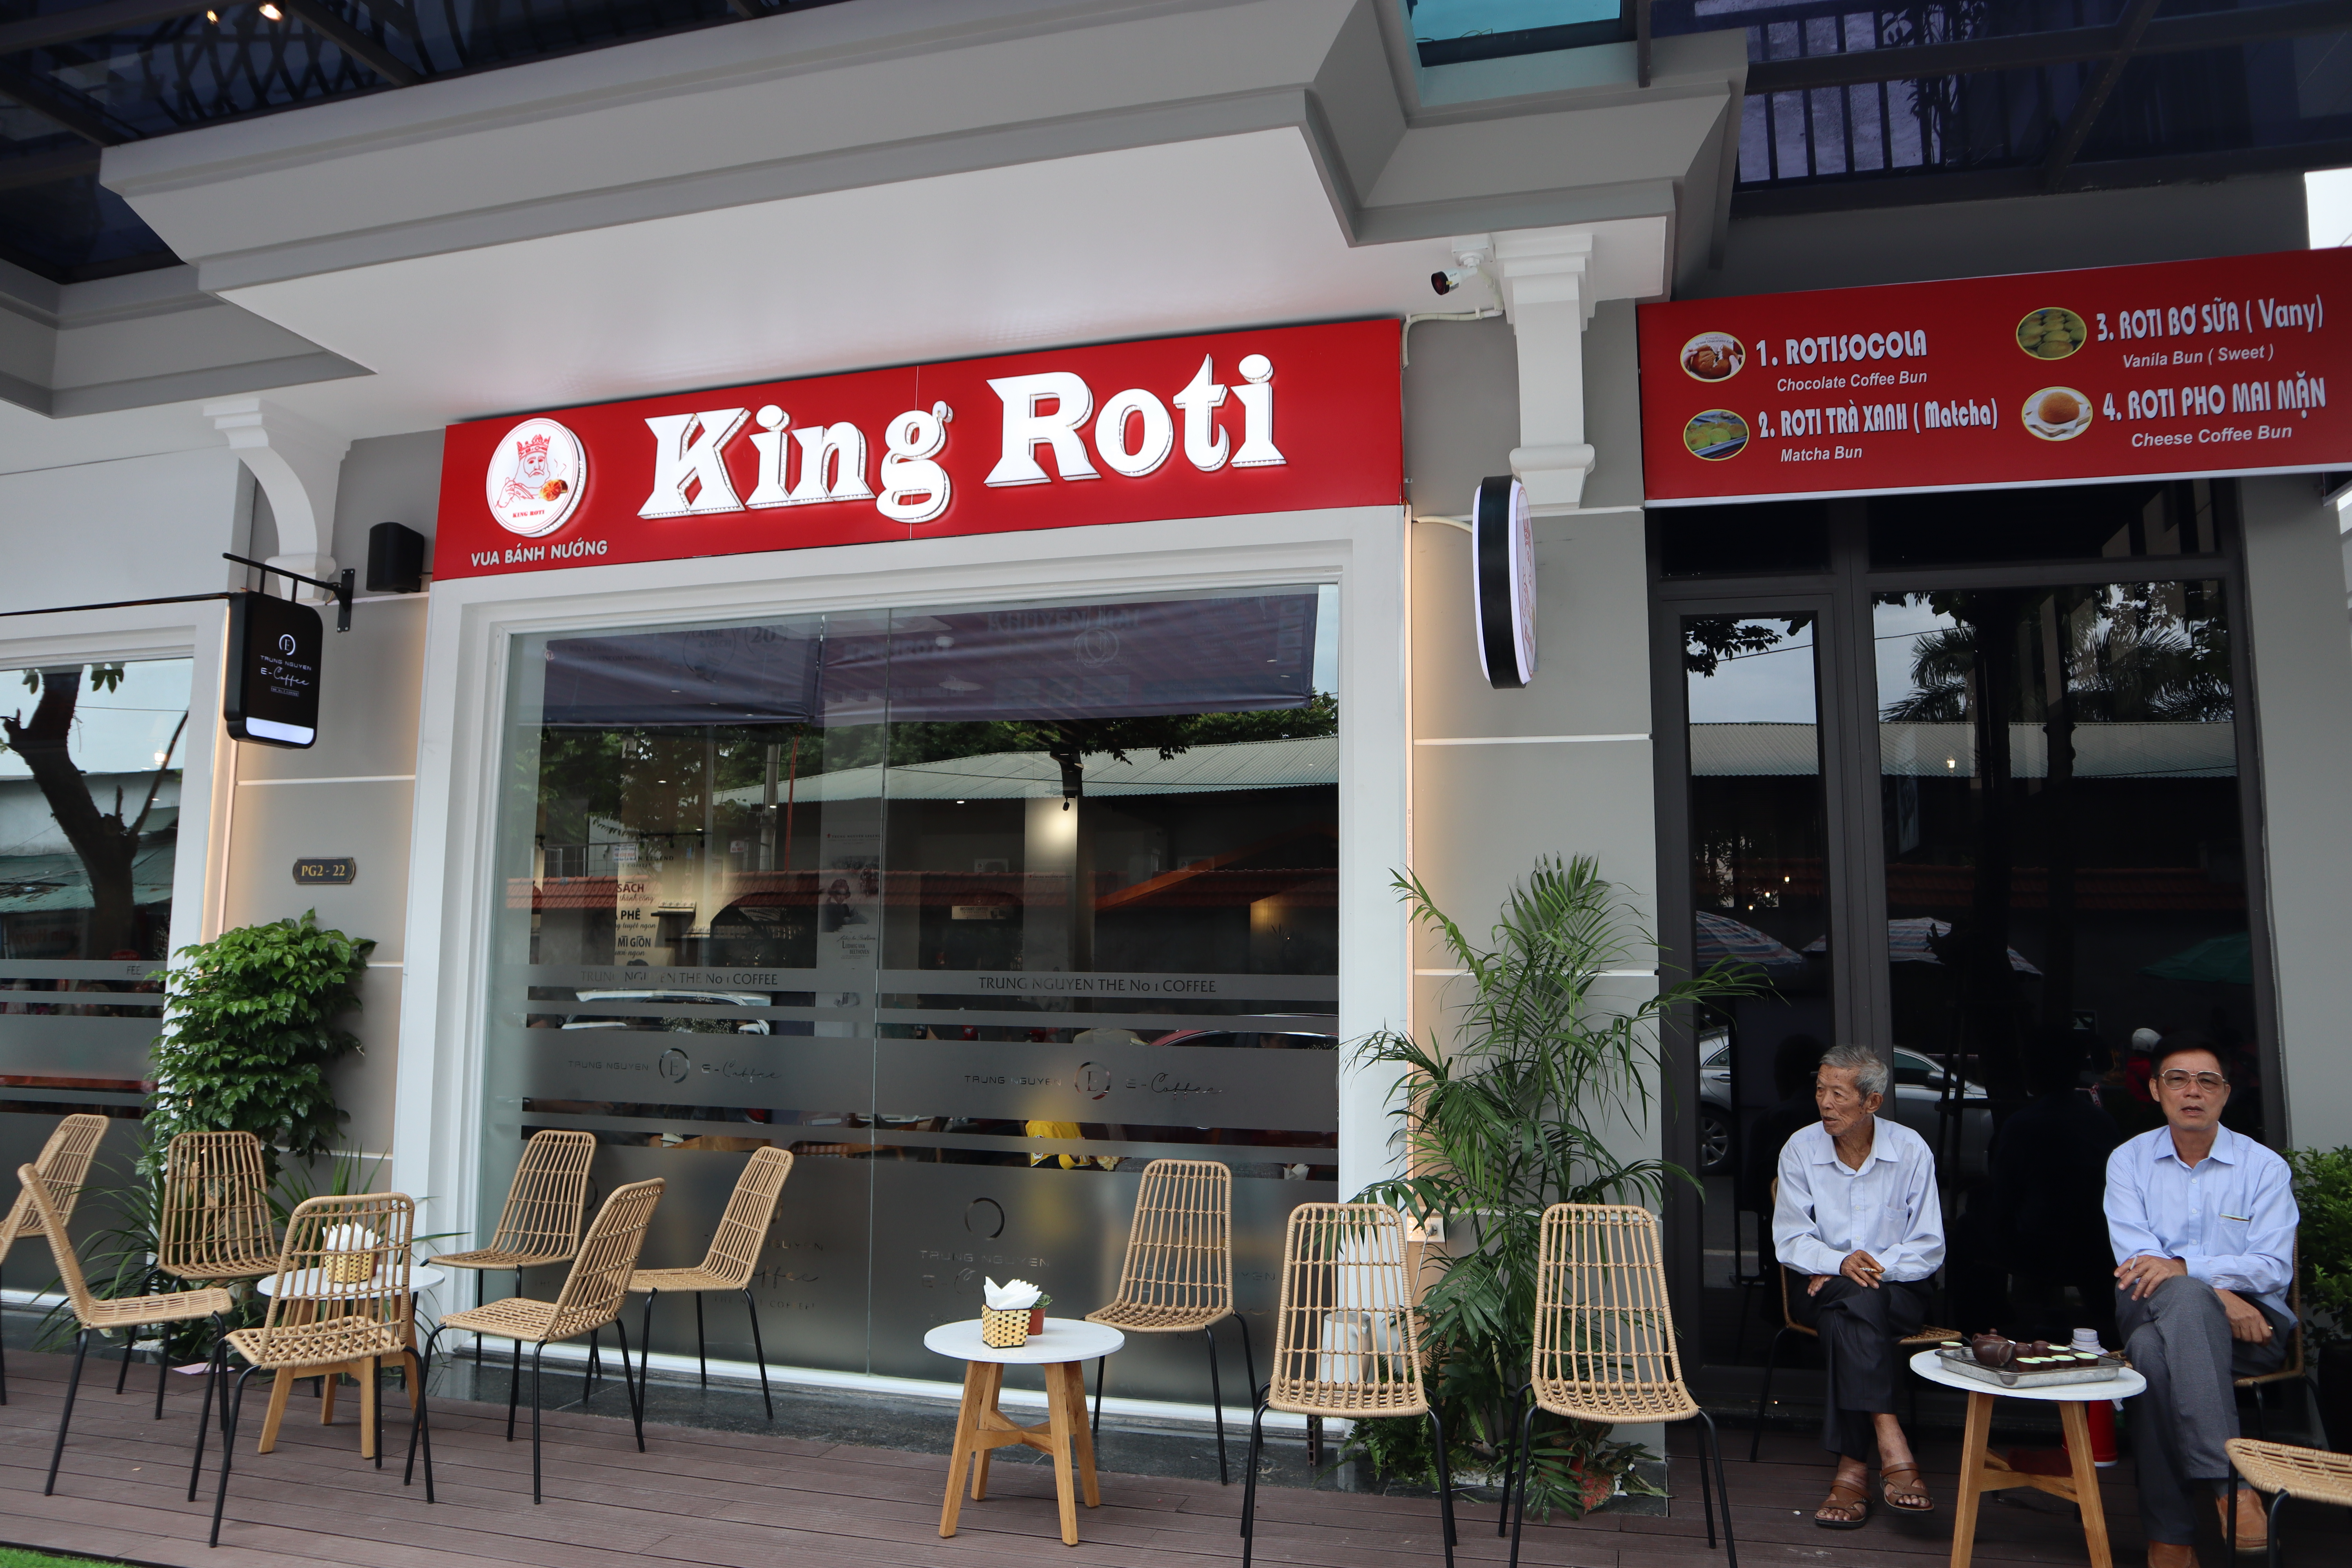 Tại sao lại chọn mô hình kinh doanh nhượng quyền King Roti 3